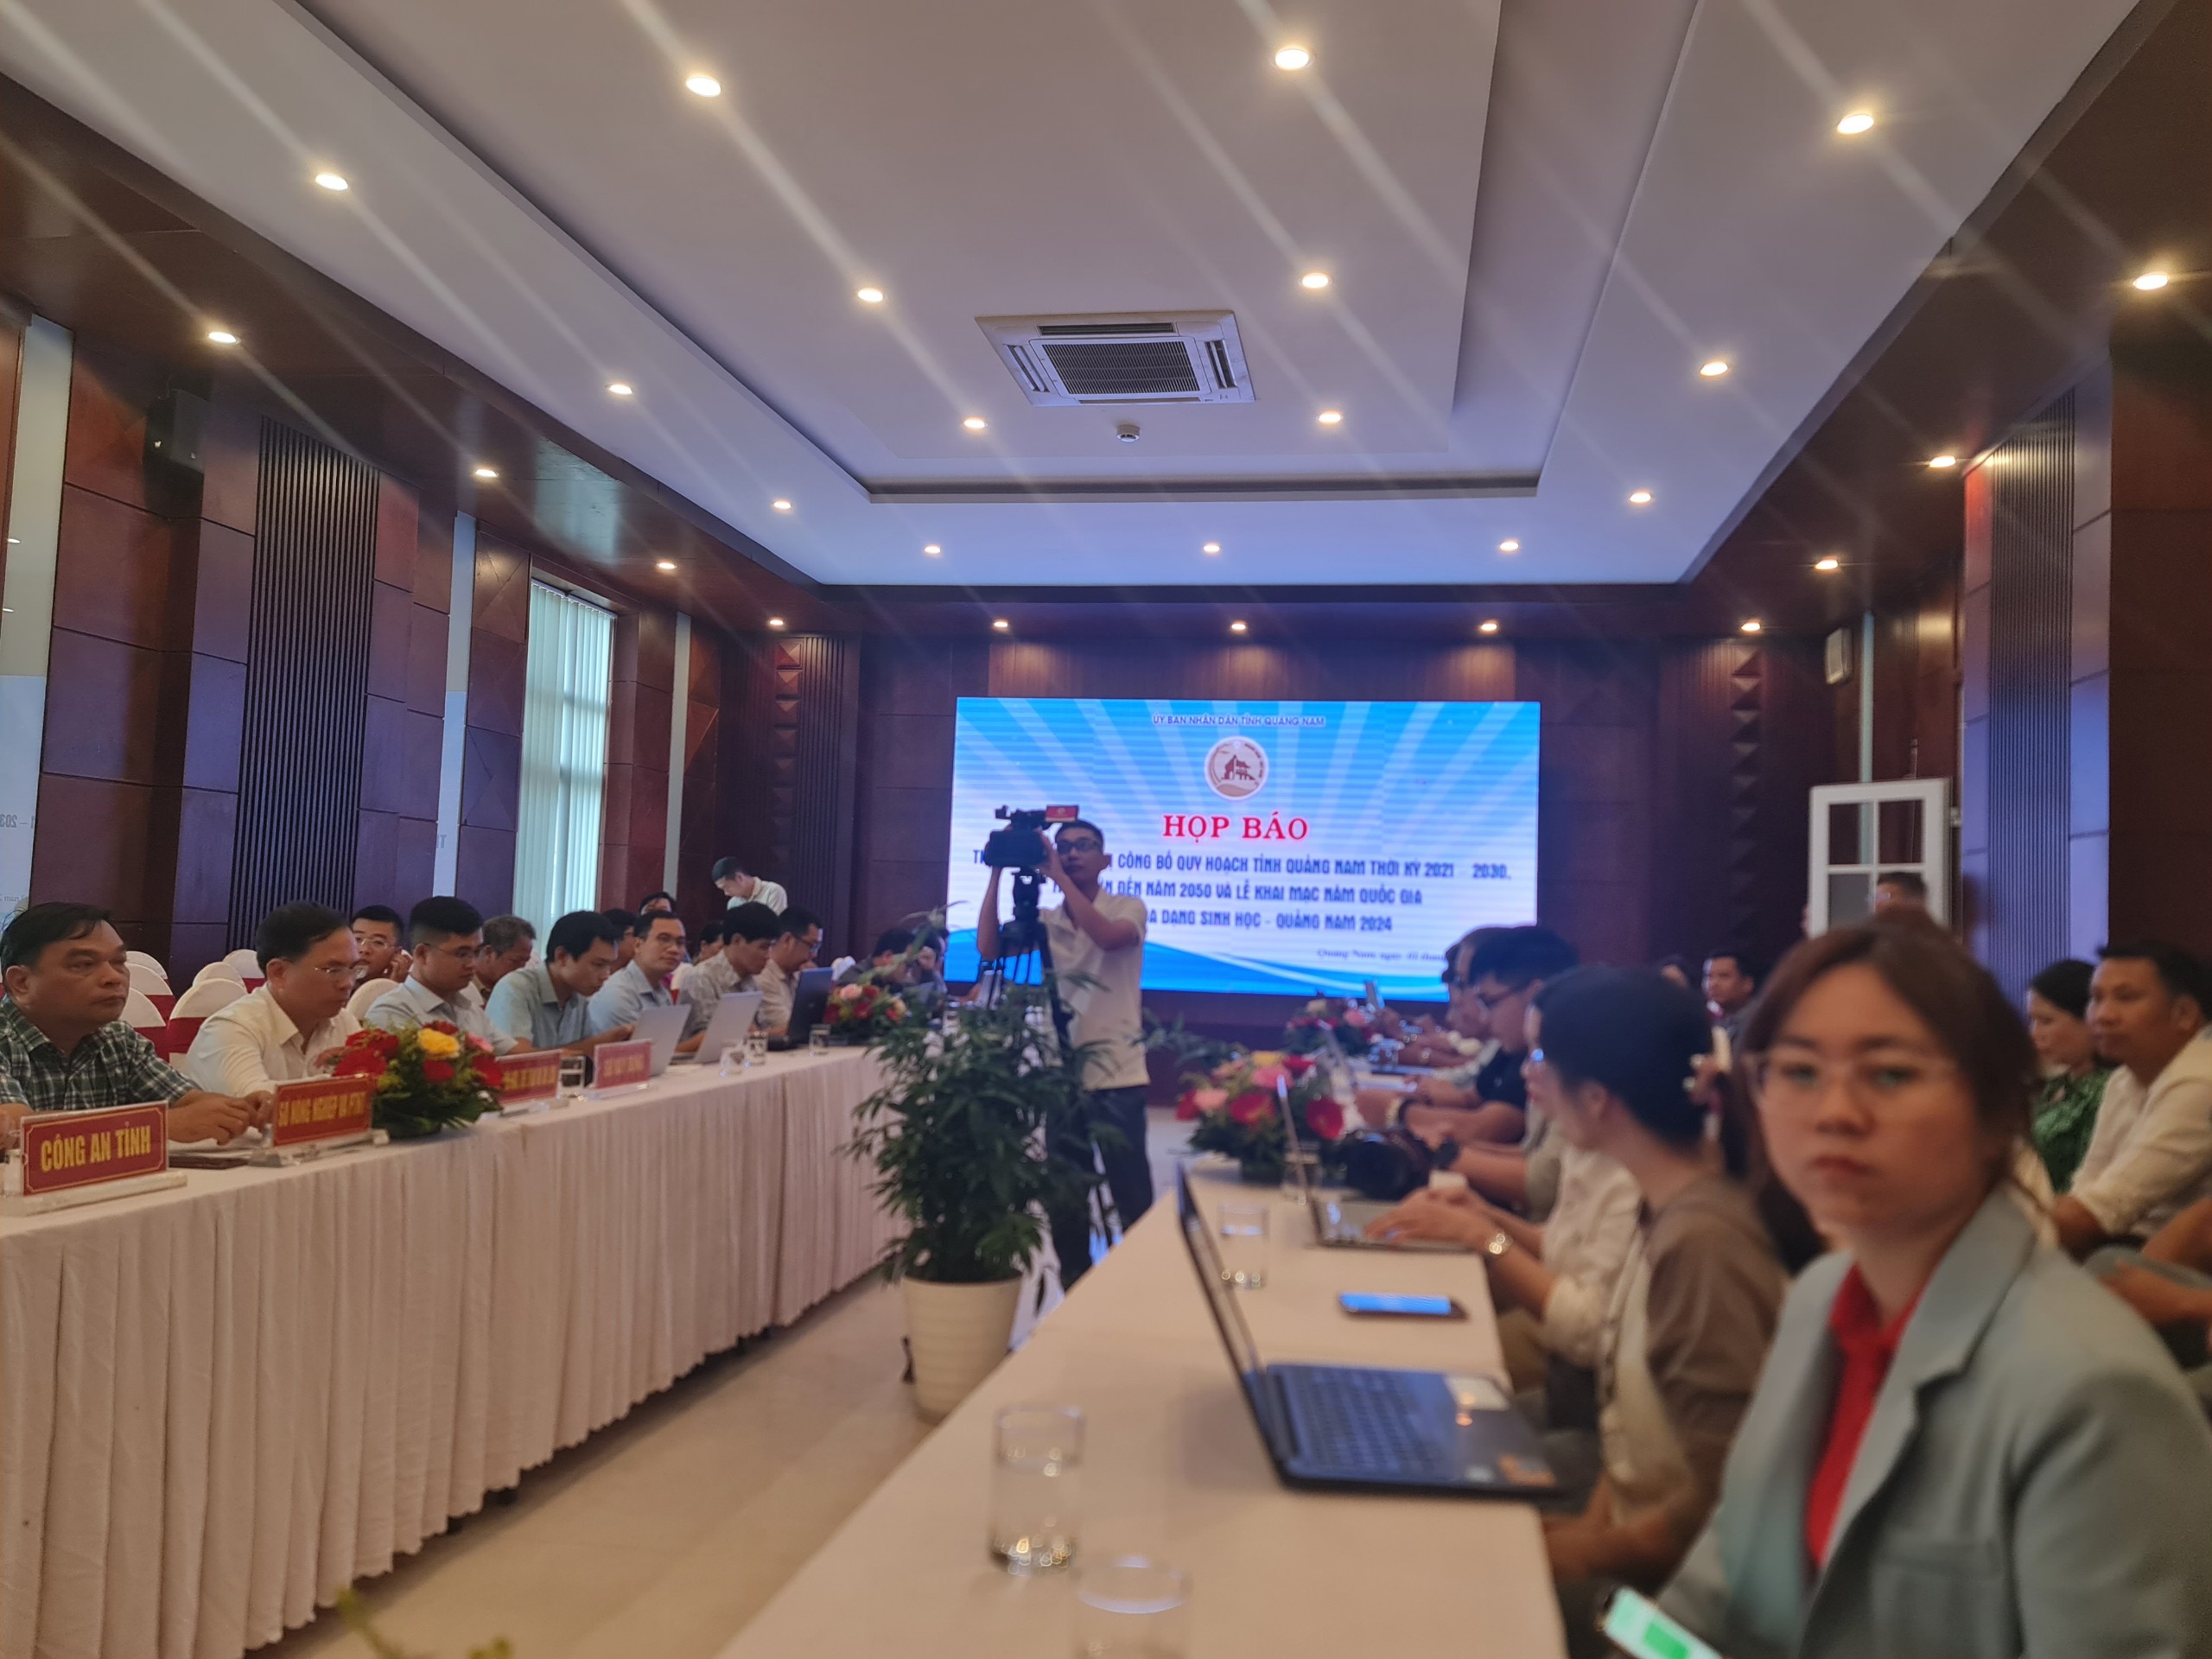 Quy hoạch tỉnh Quảng Nam thời kỳ 2021 - 2030, tầm nhìn đến năm 2050 là một chiến lược, sẽ sớm thực hiện ước mơ- Ảnh 2.